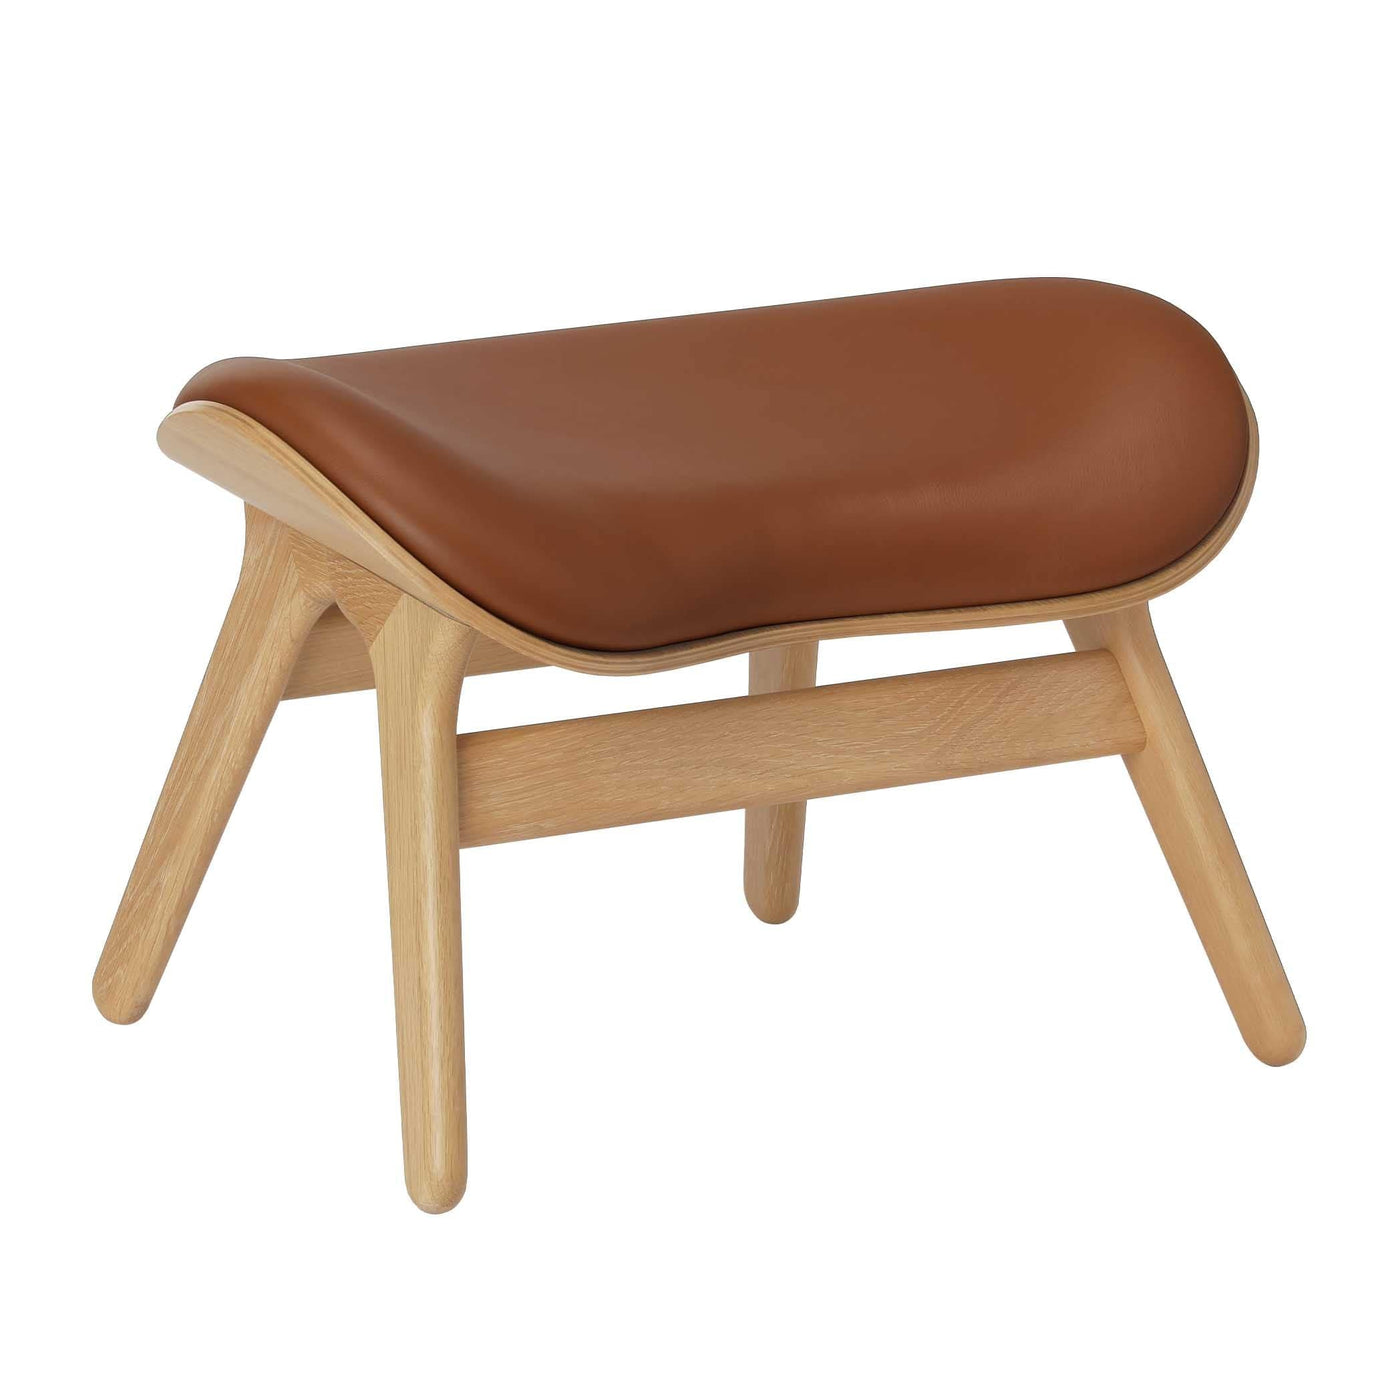 Umage A Conversation Piece, ottoman pour accompagner le fauteuil, en bois et polyester, cuir cognac, chêne